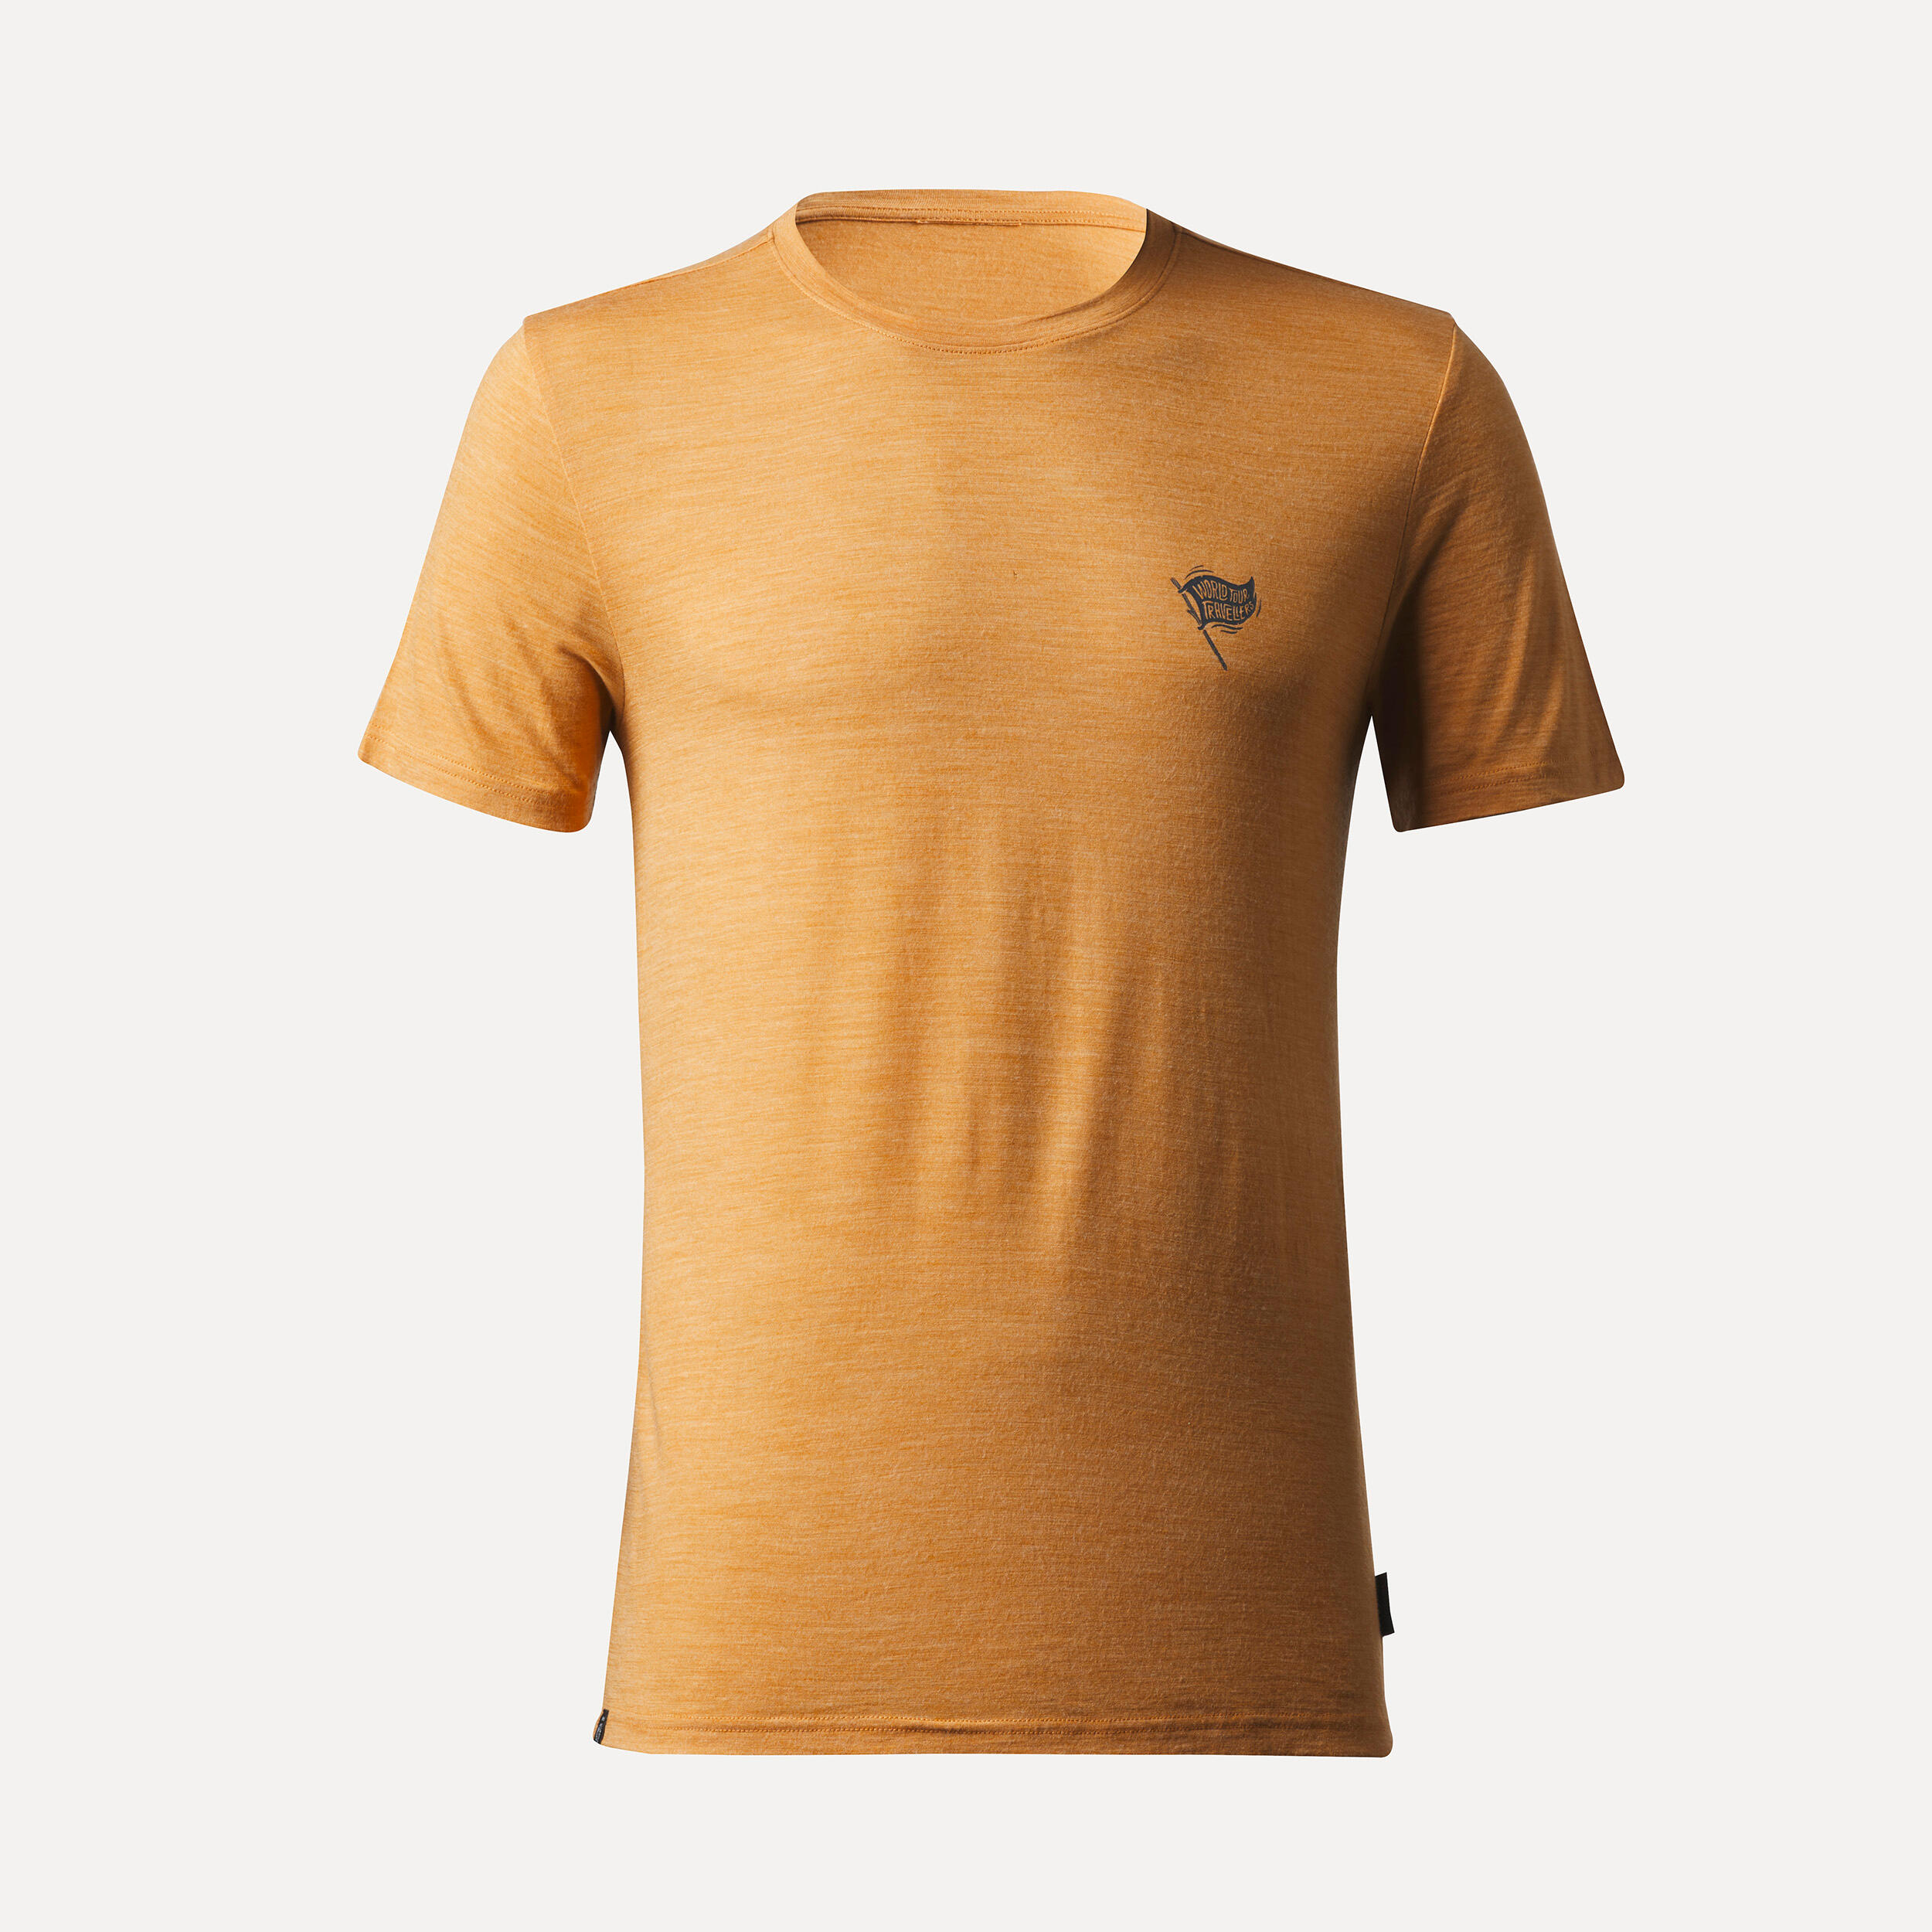 Men’s short-sleeved Merino wool hiking travel t-shirt - TRAVEL 500 yellow 2/4